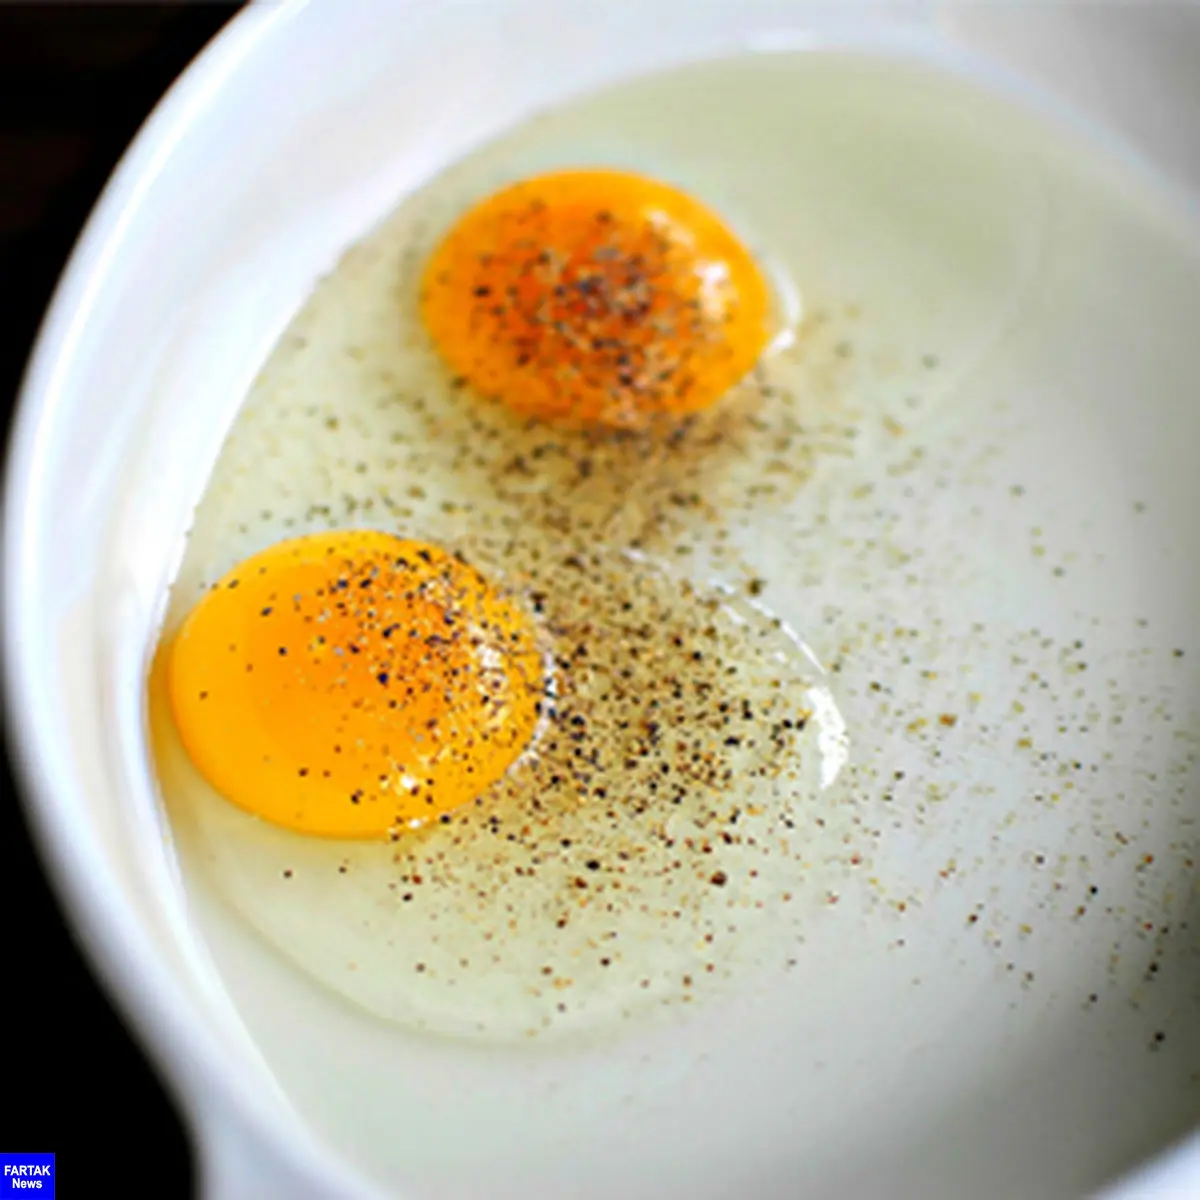 خواص فوق العاده مصرف تخم مرغ با فلفل سیاه را بدانید